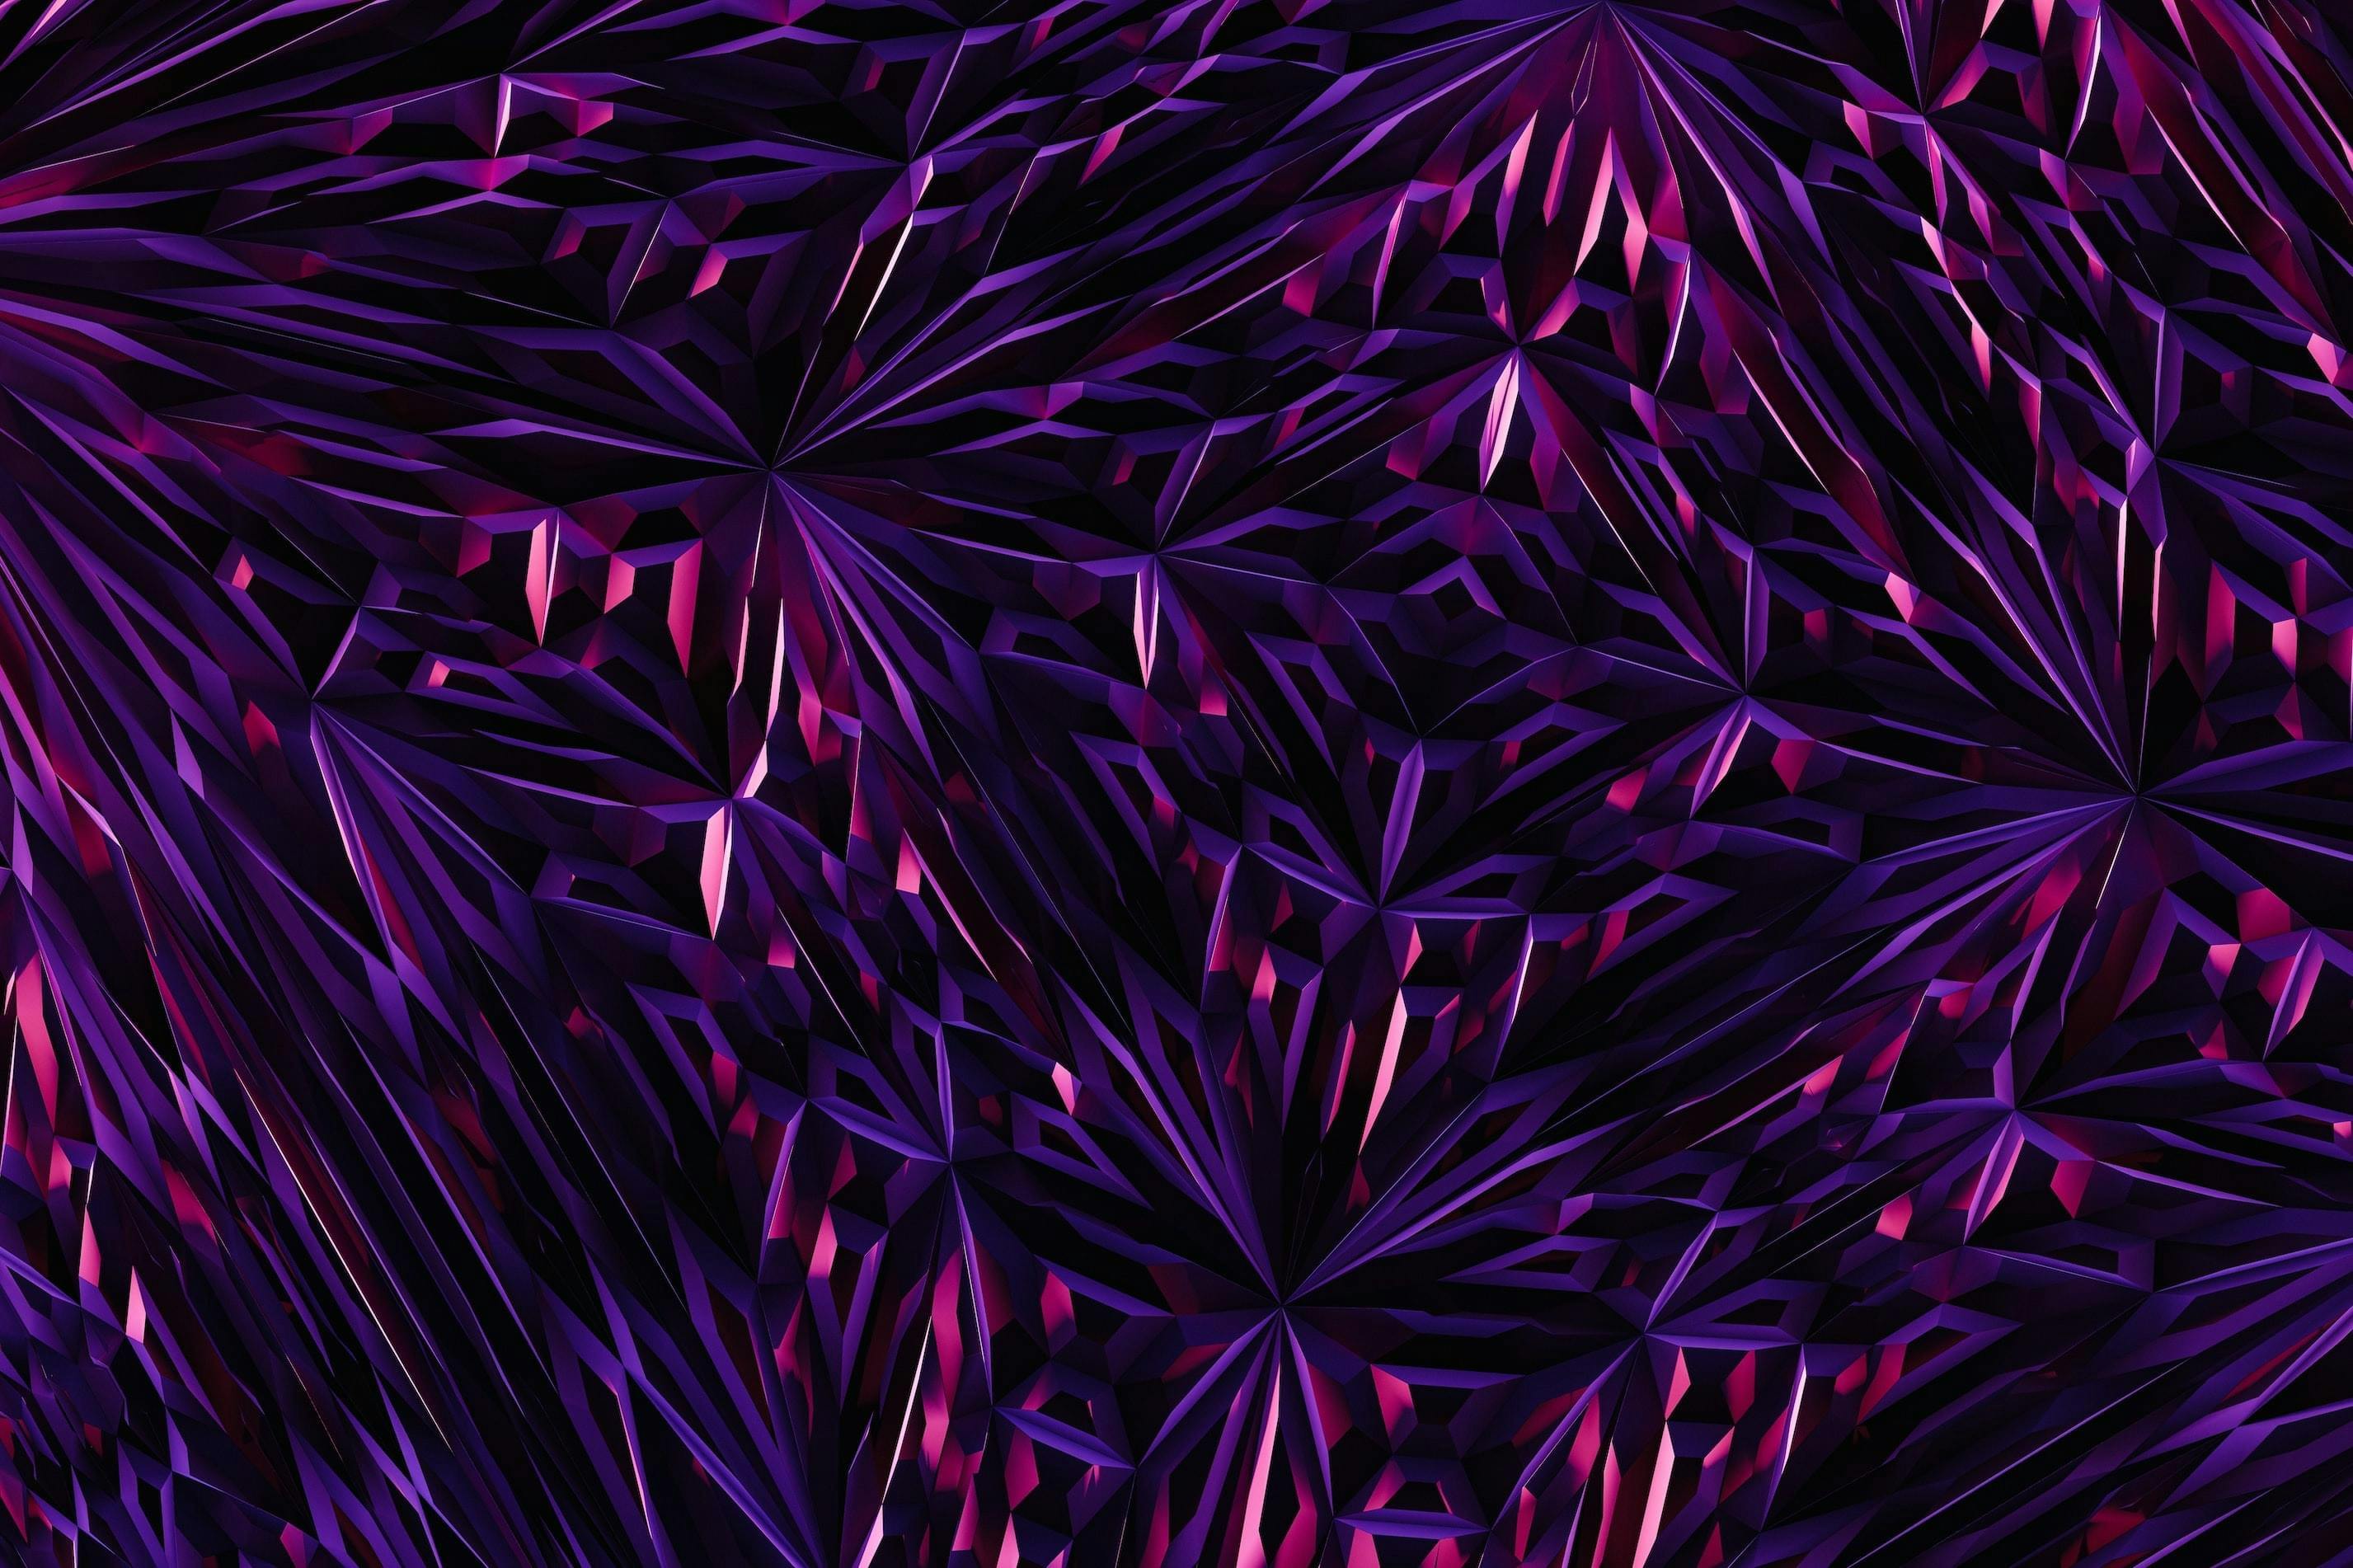 Abstract patroon in roze en paars tegen een zwarte achtergrond